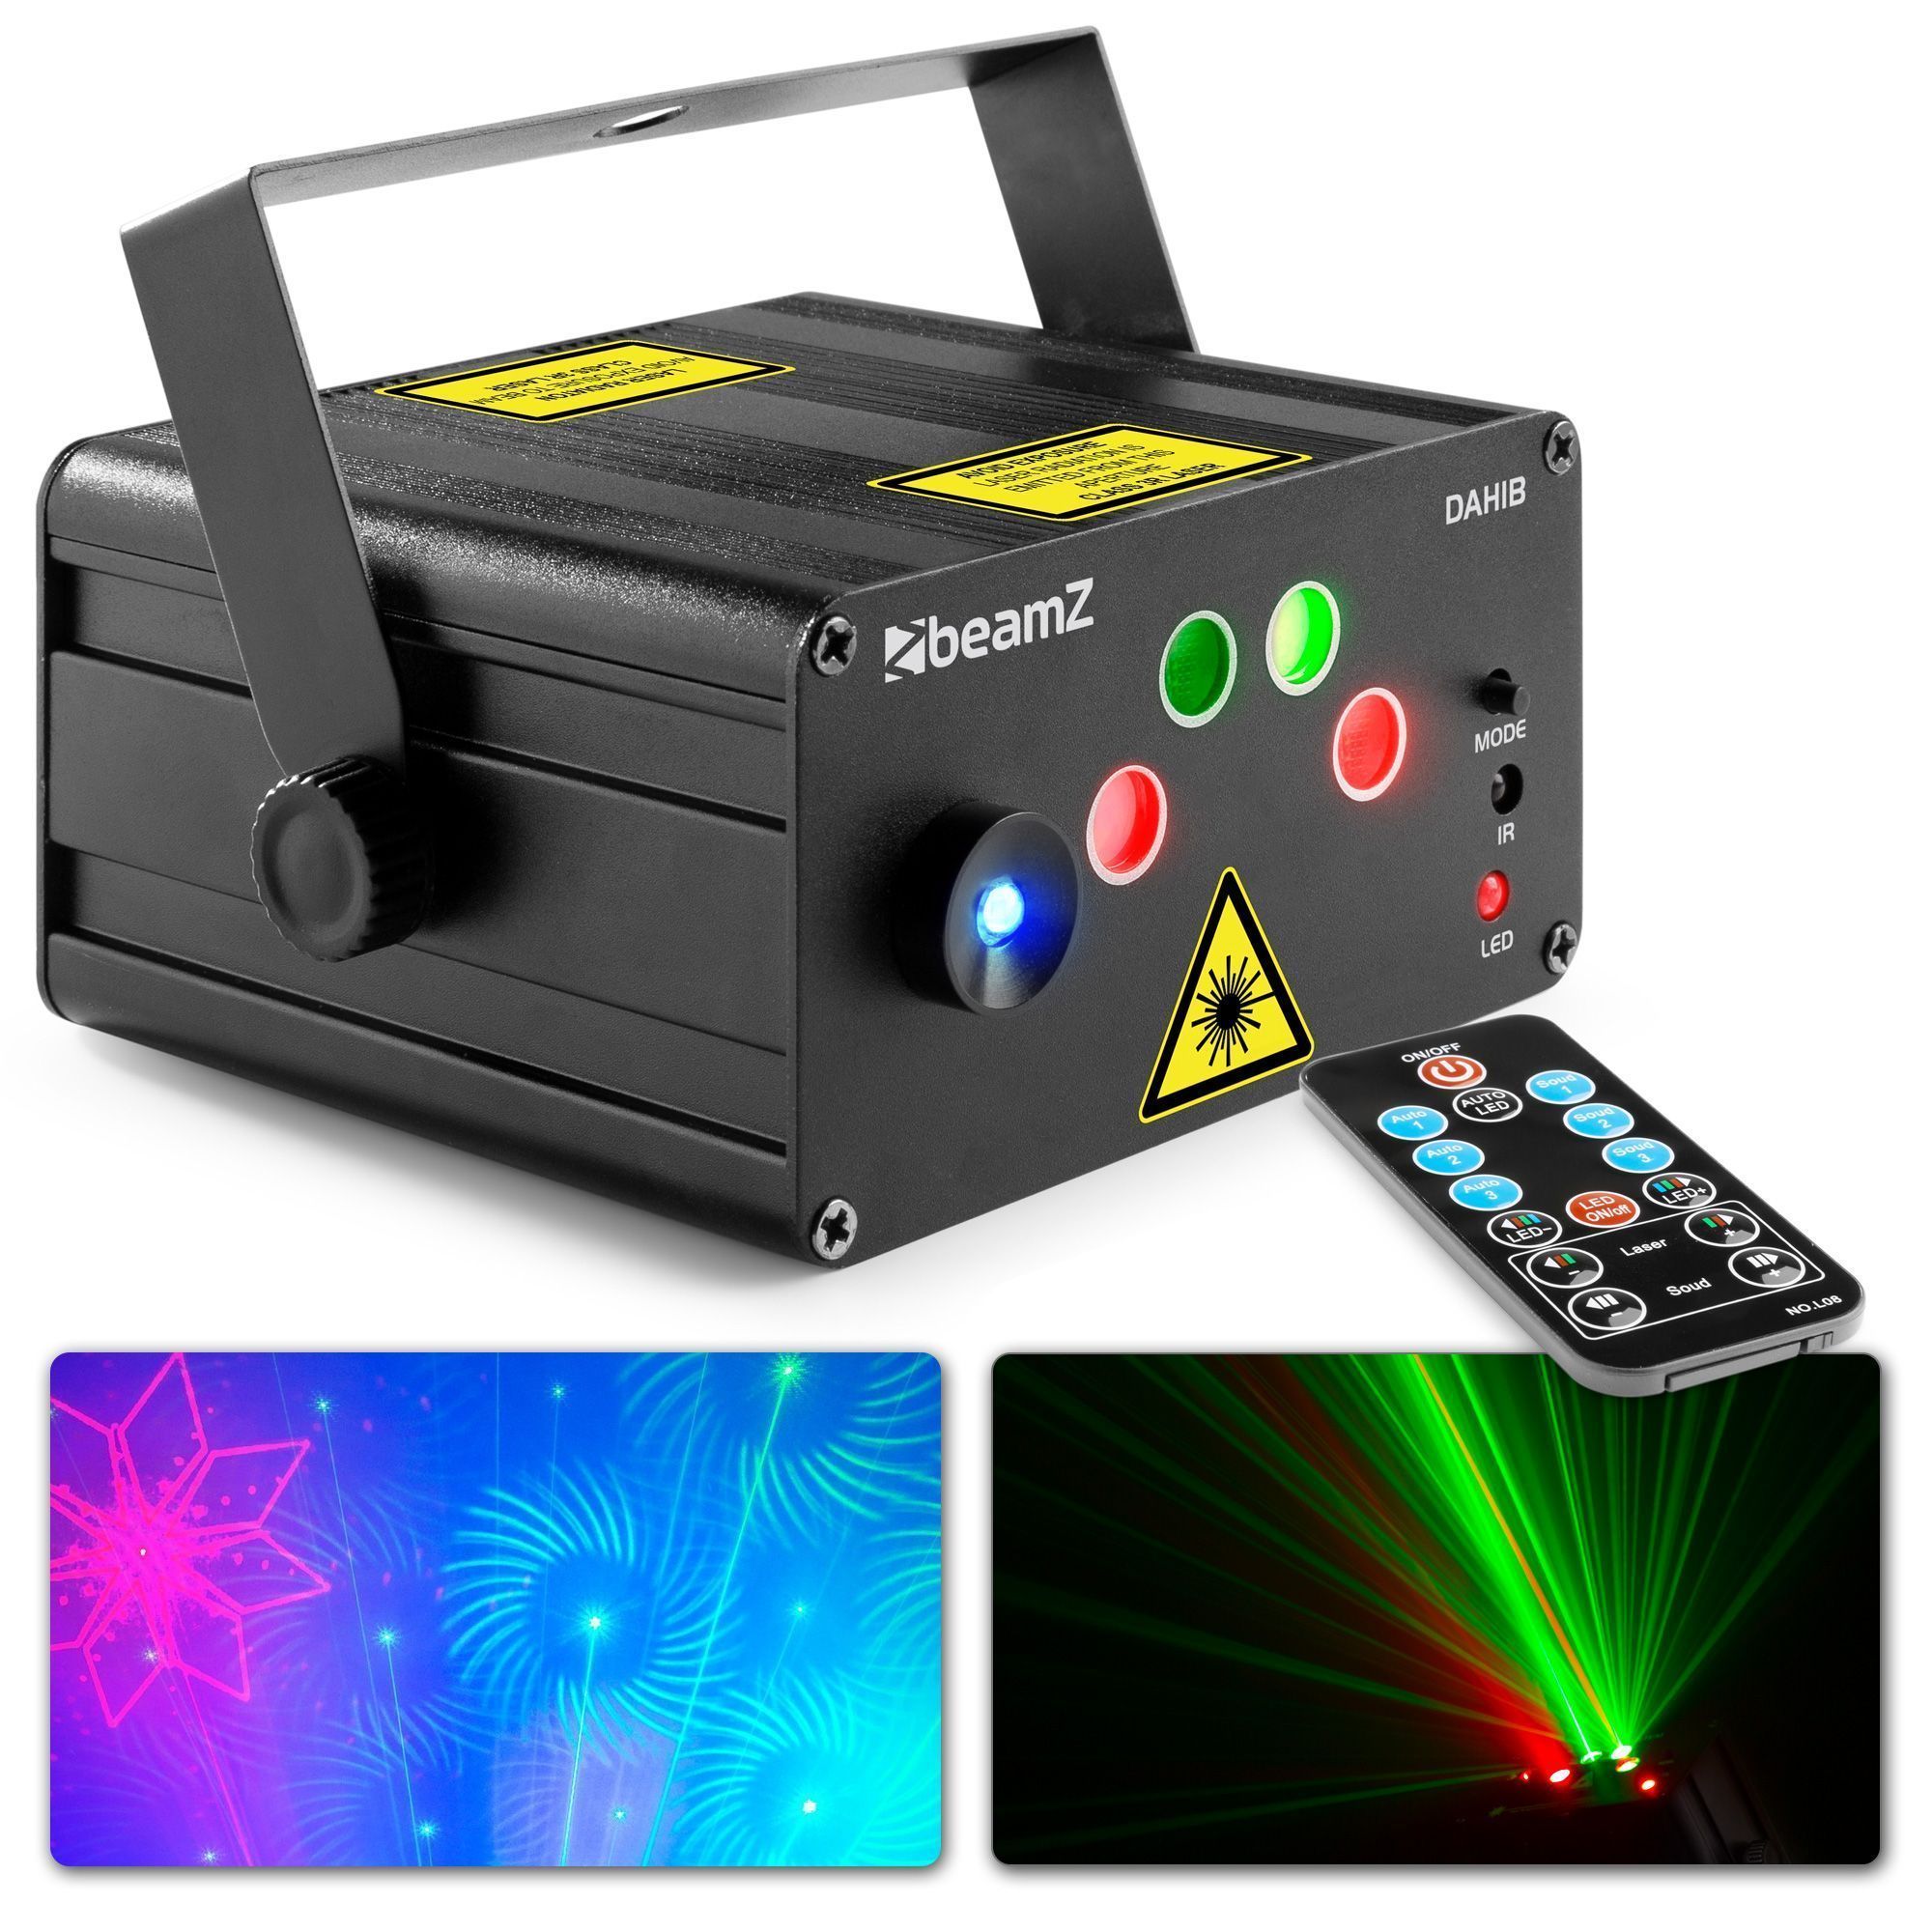 Retourdeal - BeamZ Dahib disco laser met 2 lasers en felle blauwe LED